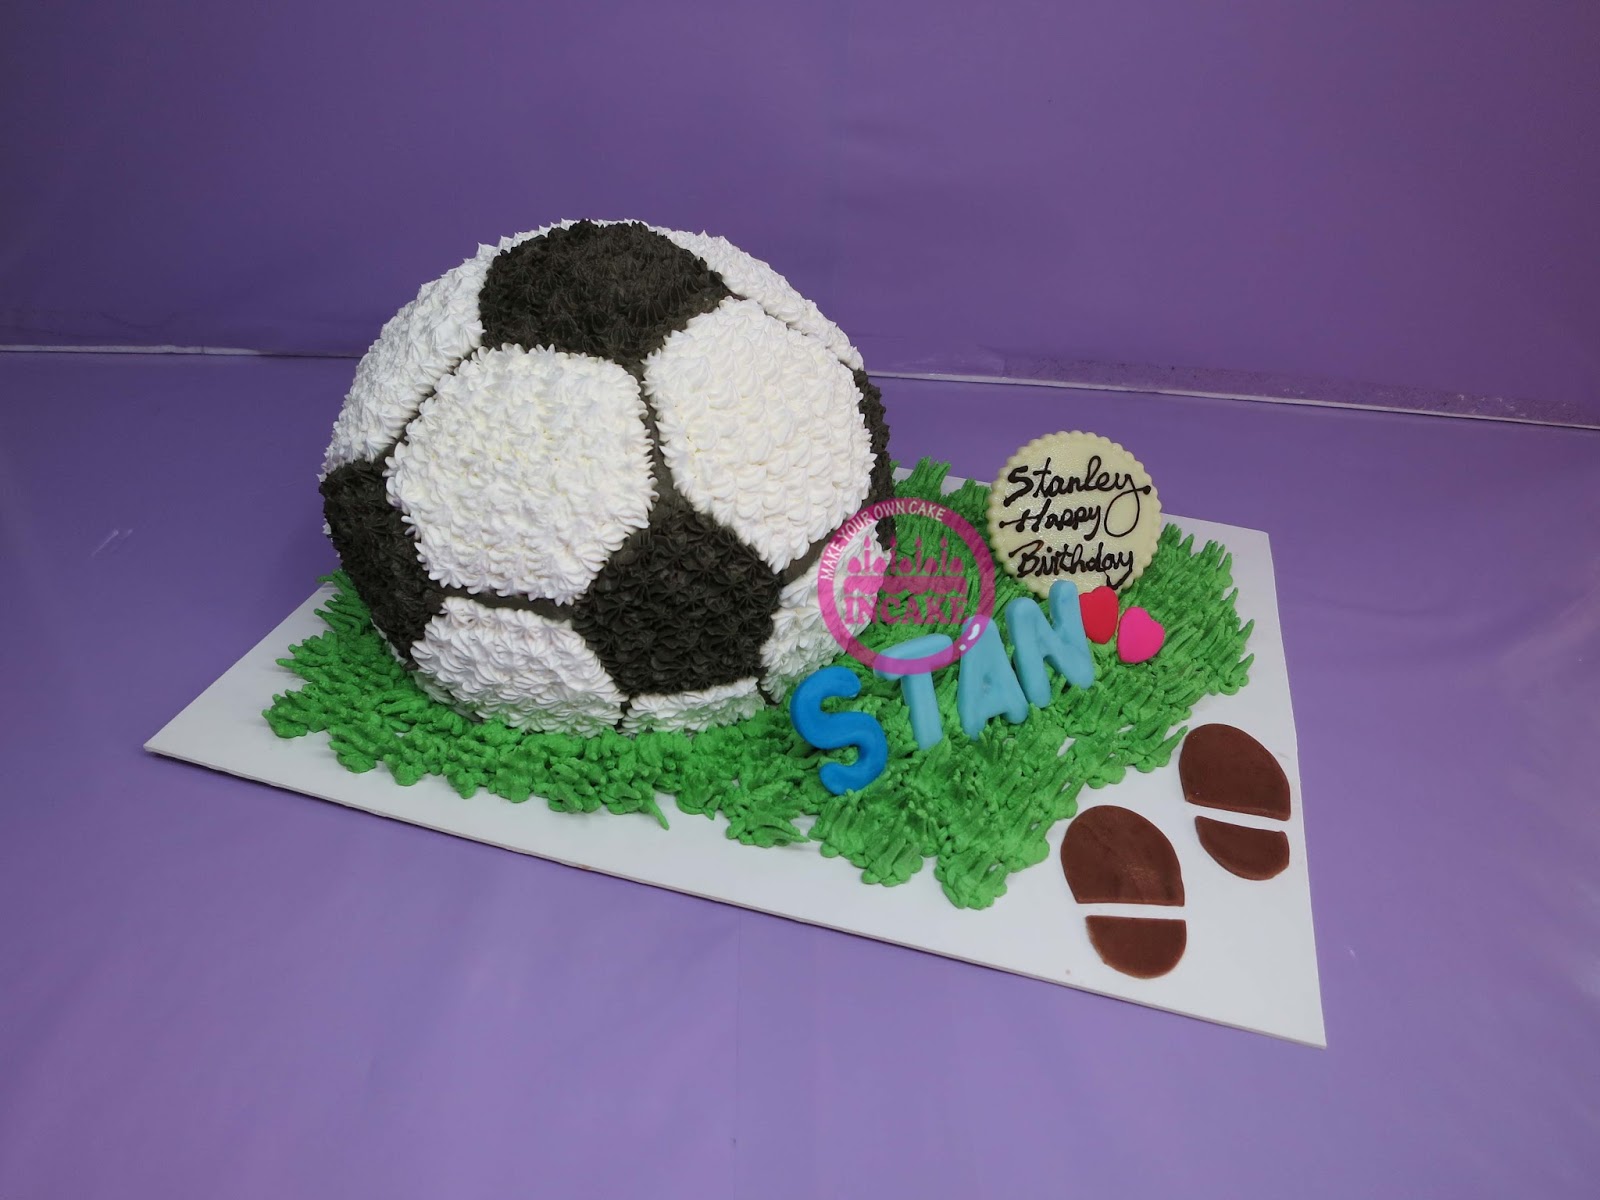 网红足球蛋糕装饰足球队衣爱运动男神蛋糕装扮插牌甜品插件-阿里巴巴